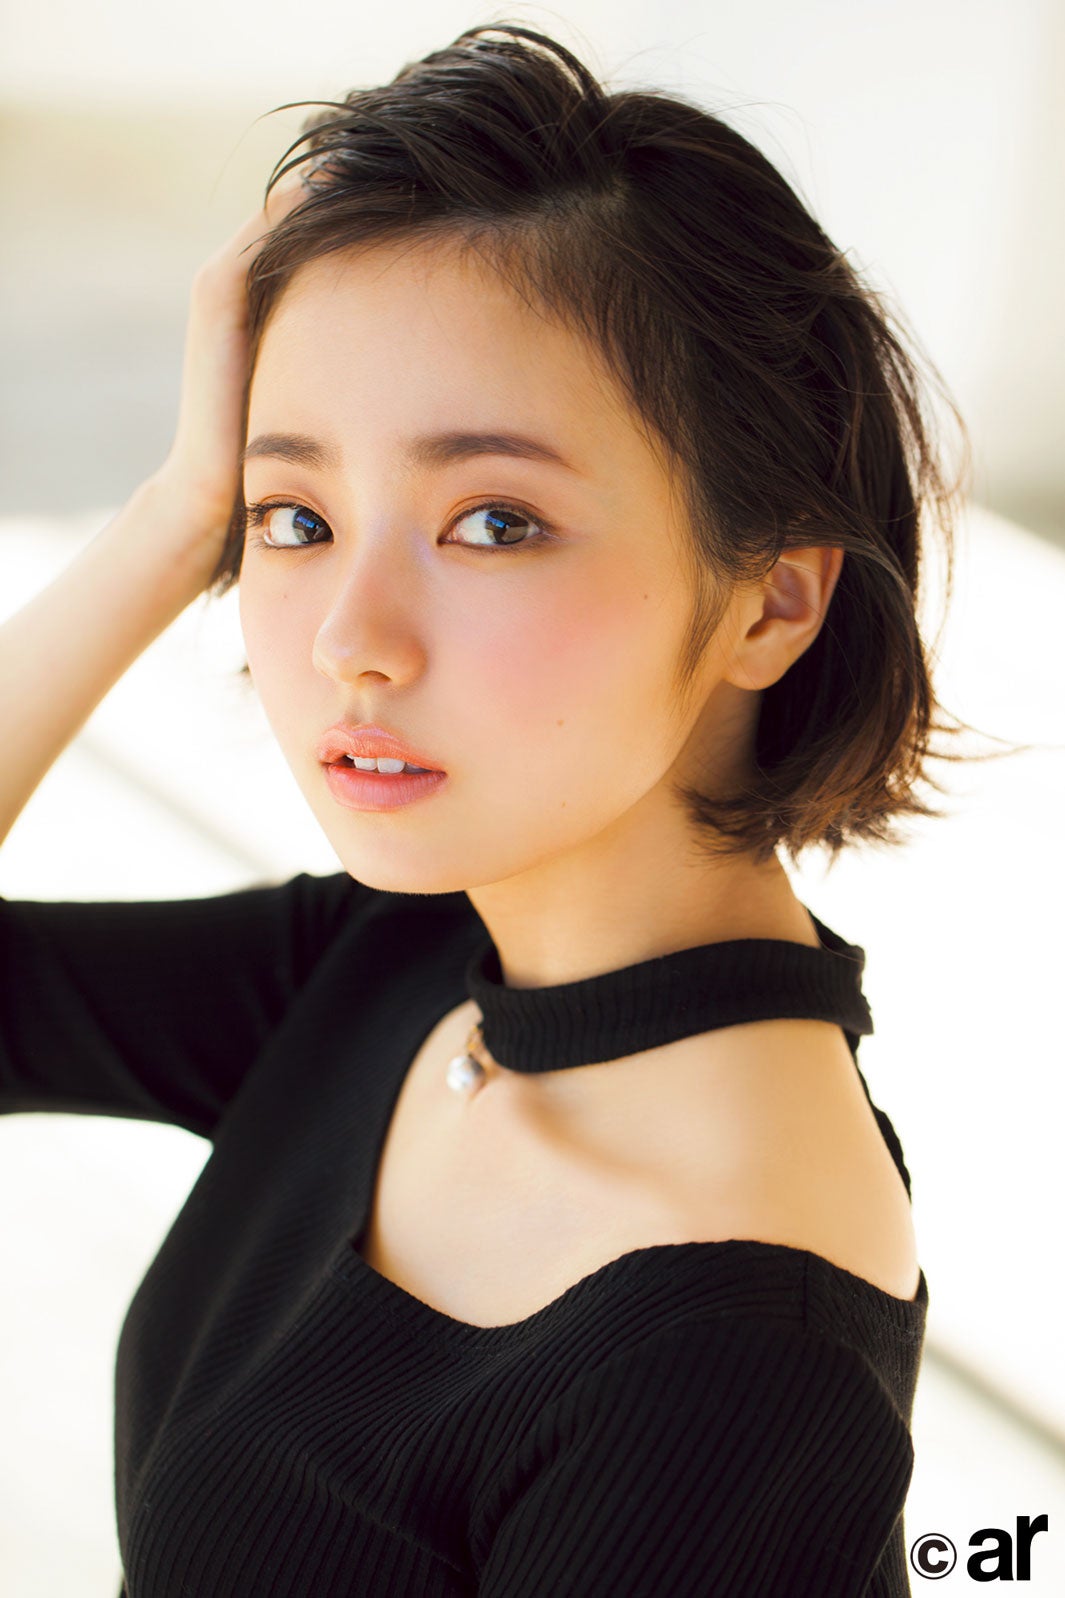 欅坂46今泉佑唯、引き寄せチーク×弾ける笑顔で魅力溢れる - モデルプレス